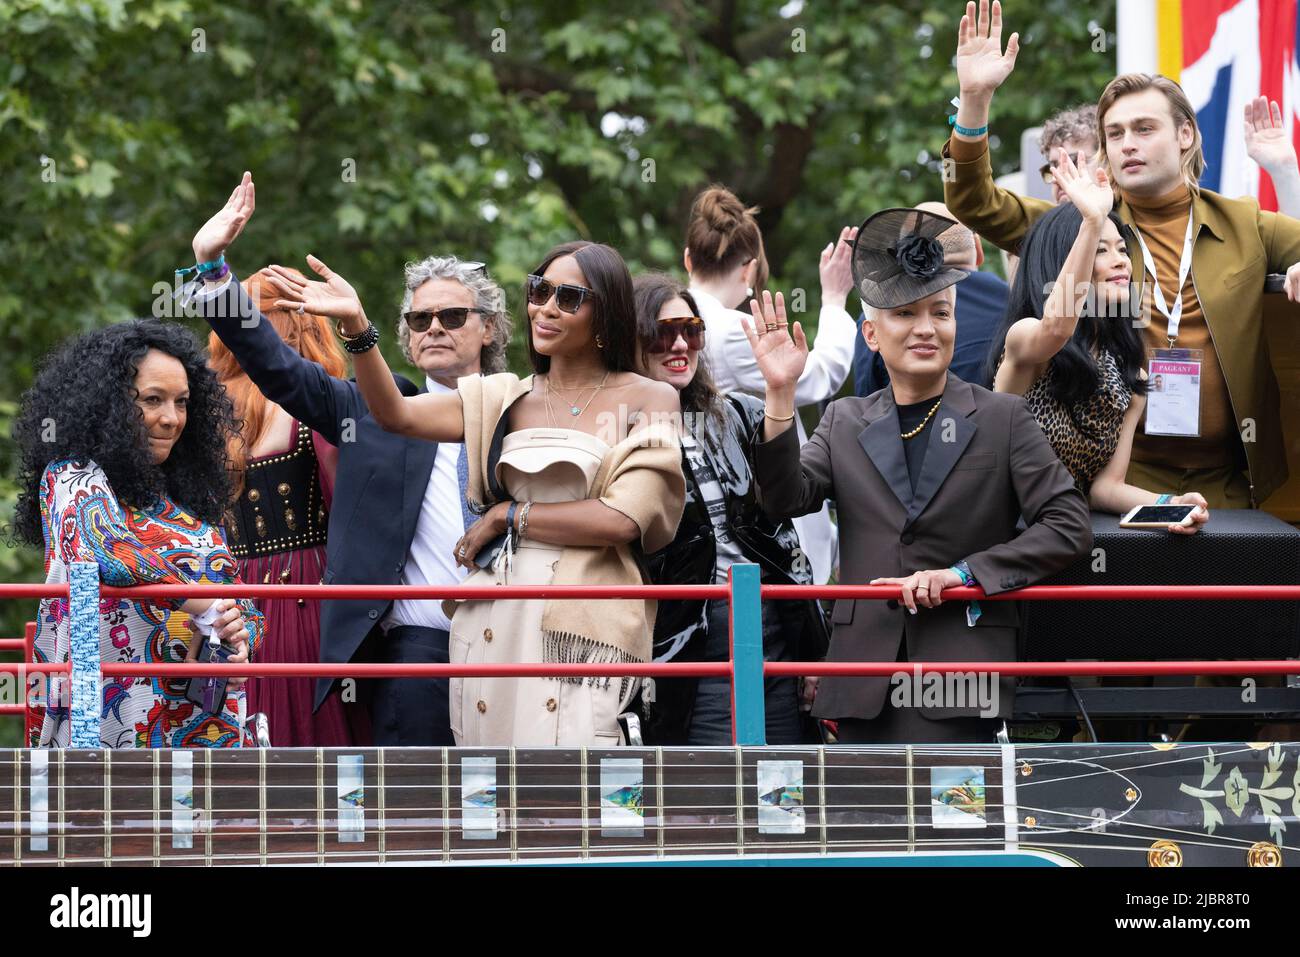 Der Platinum Jubilee Pageant fand am Sonntag, den 5. Juni 2022, in der Nähe des Buckingham Palace statt, als Teil der Platinum Jubilee-Feiern von Königin Elizabeth II. Stockfoto